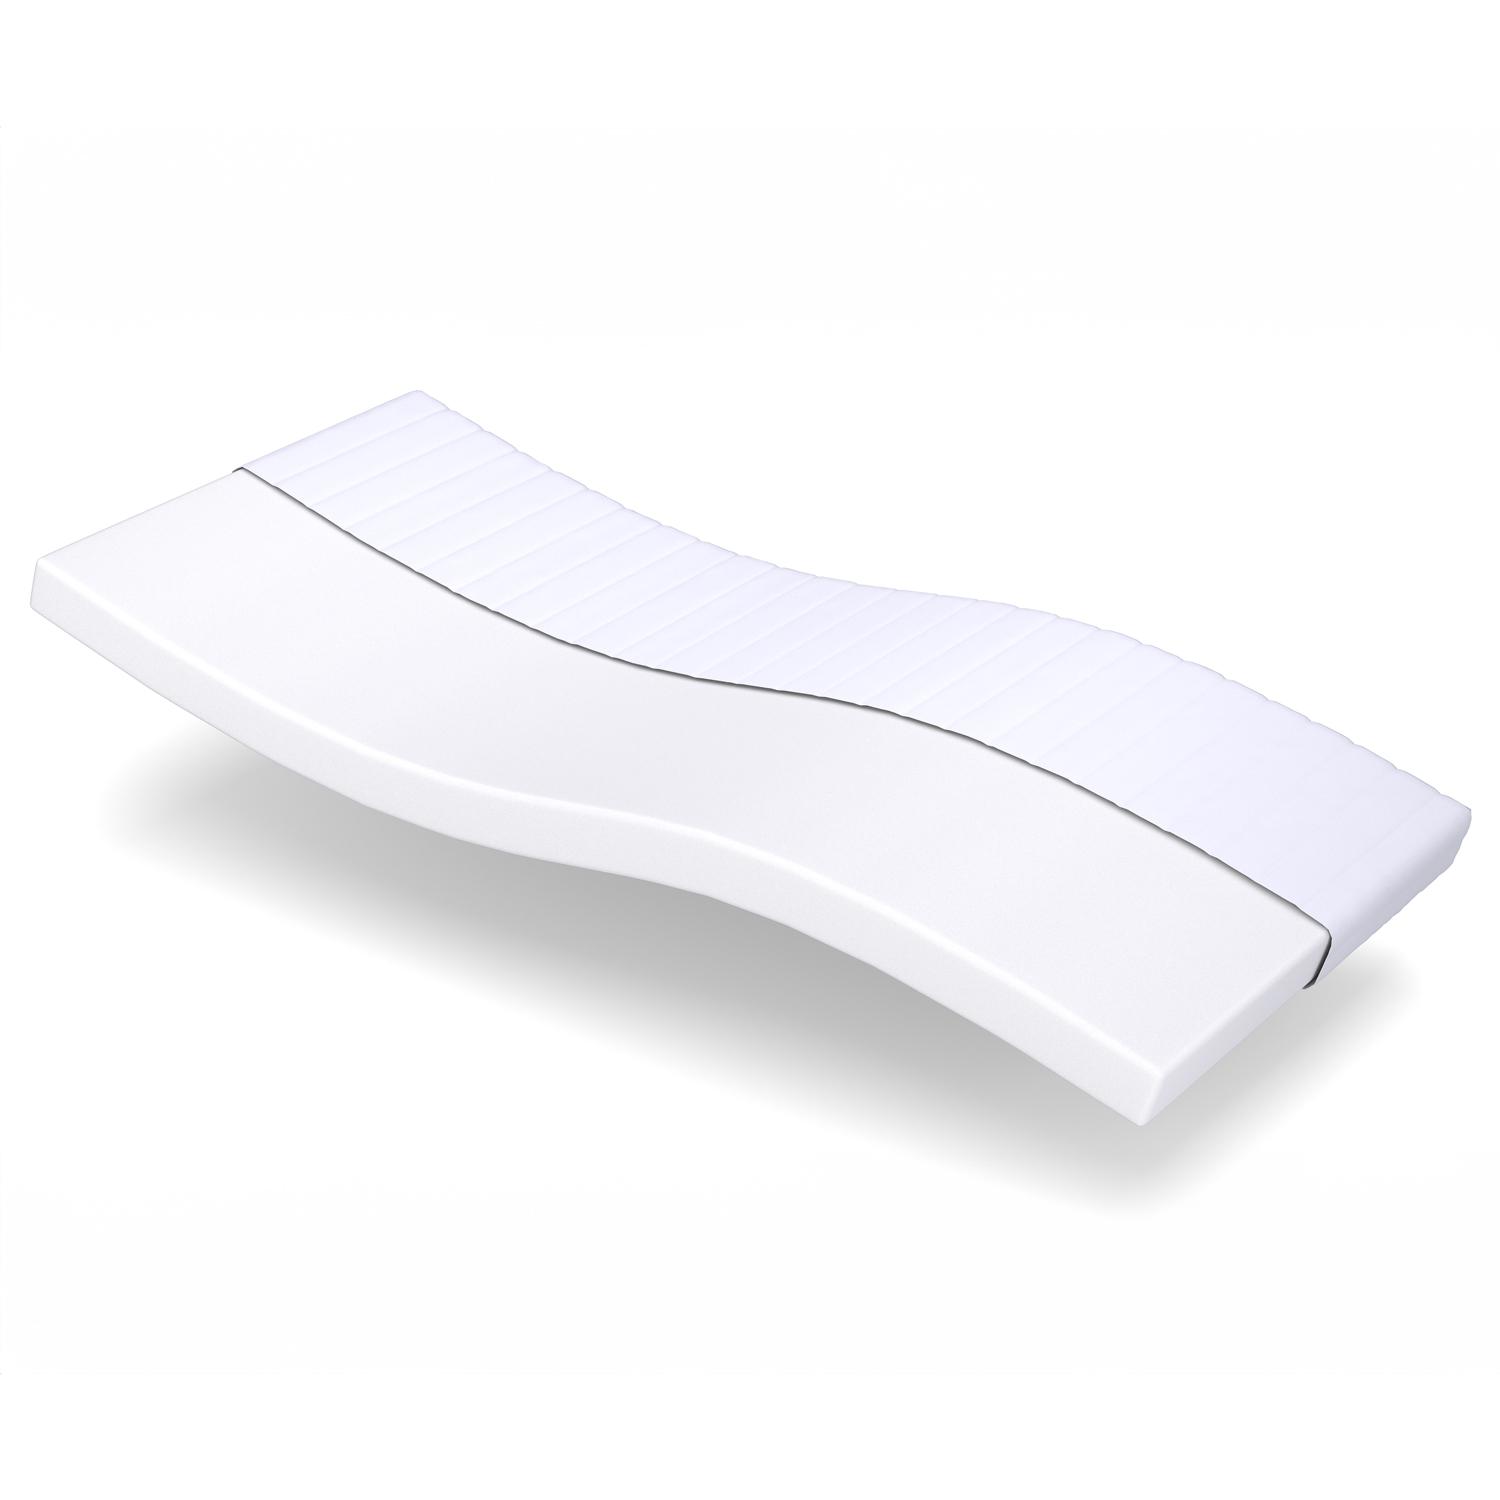 Comfort foam mattress K10 80 x 200 cm, height 10 cm, firmness level H3